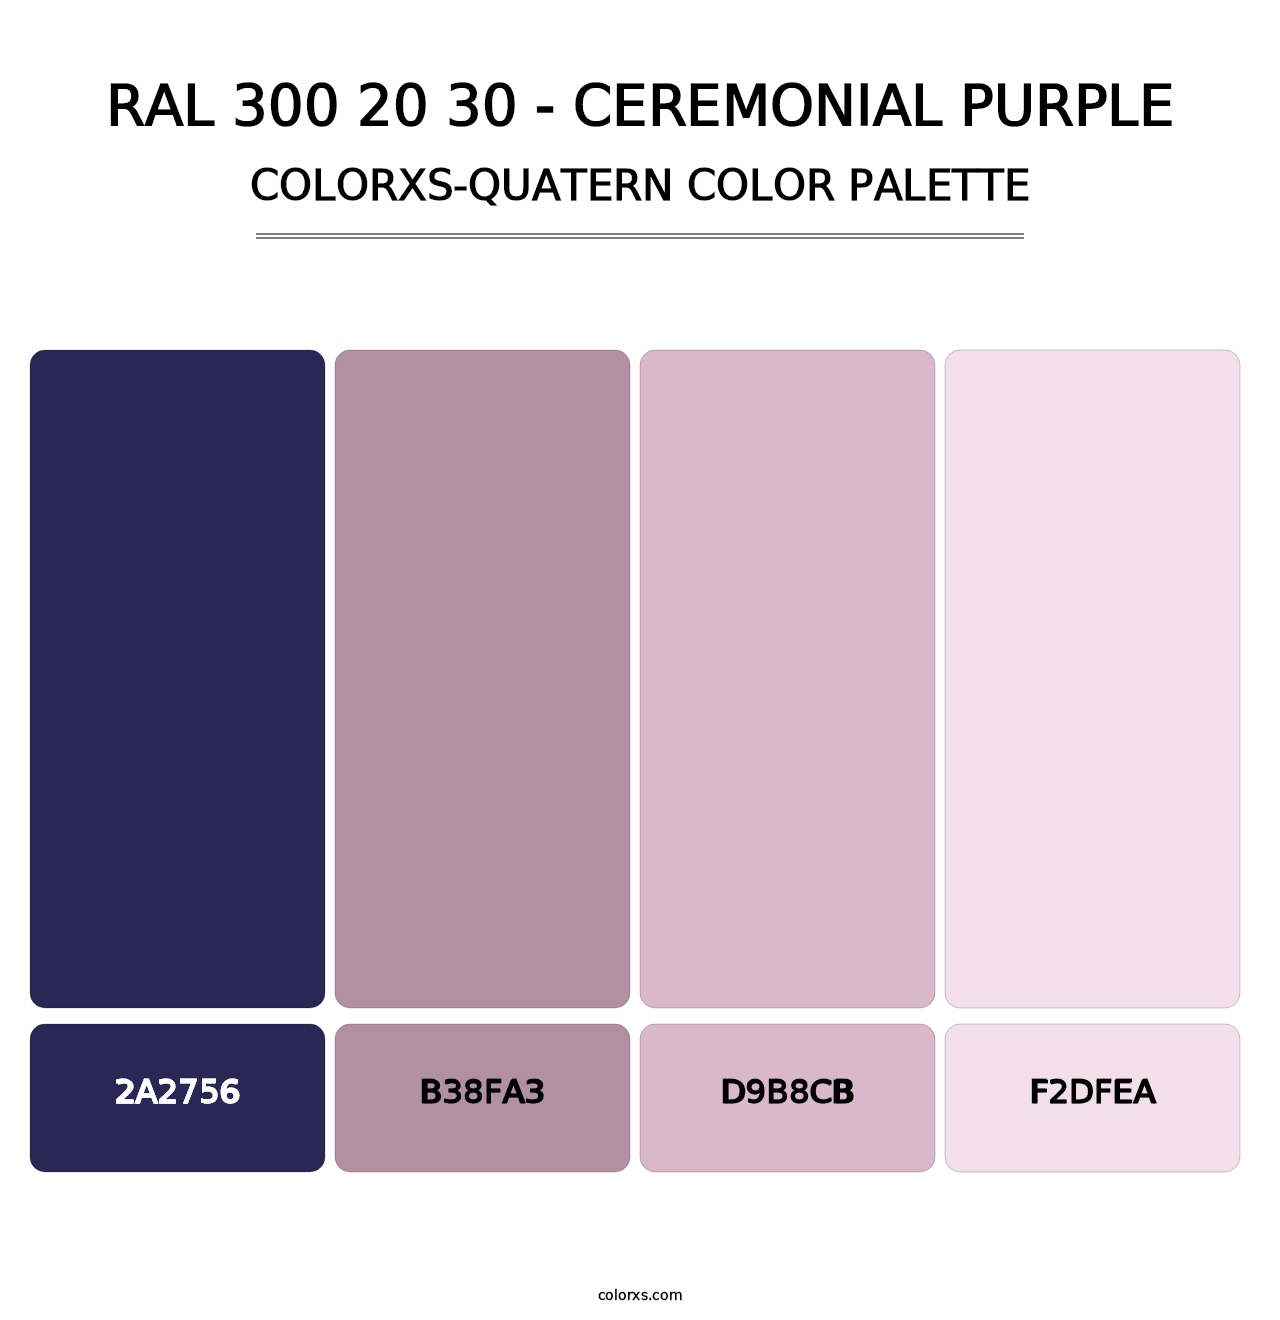 RAL 300 20 30 - Ceremonial Purple - Colorxs Quatern Palette